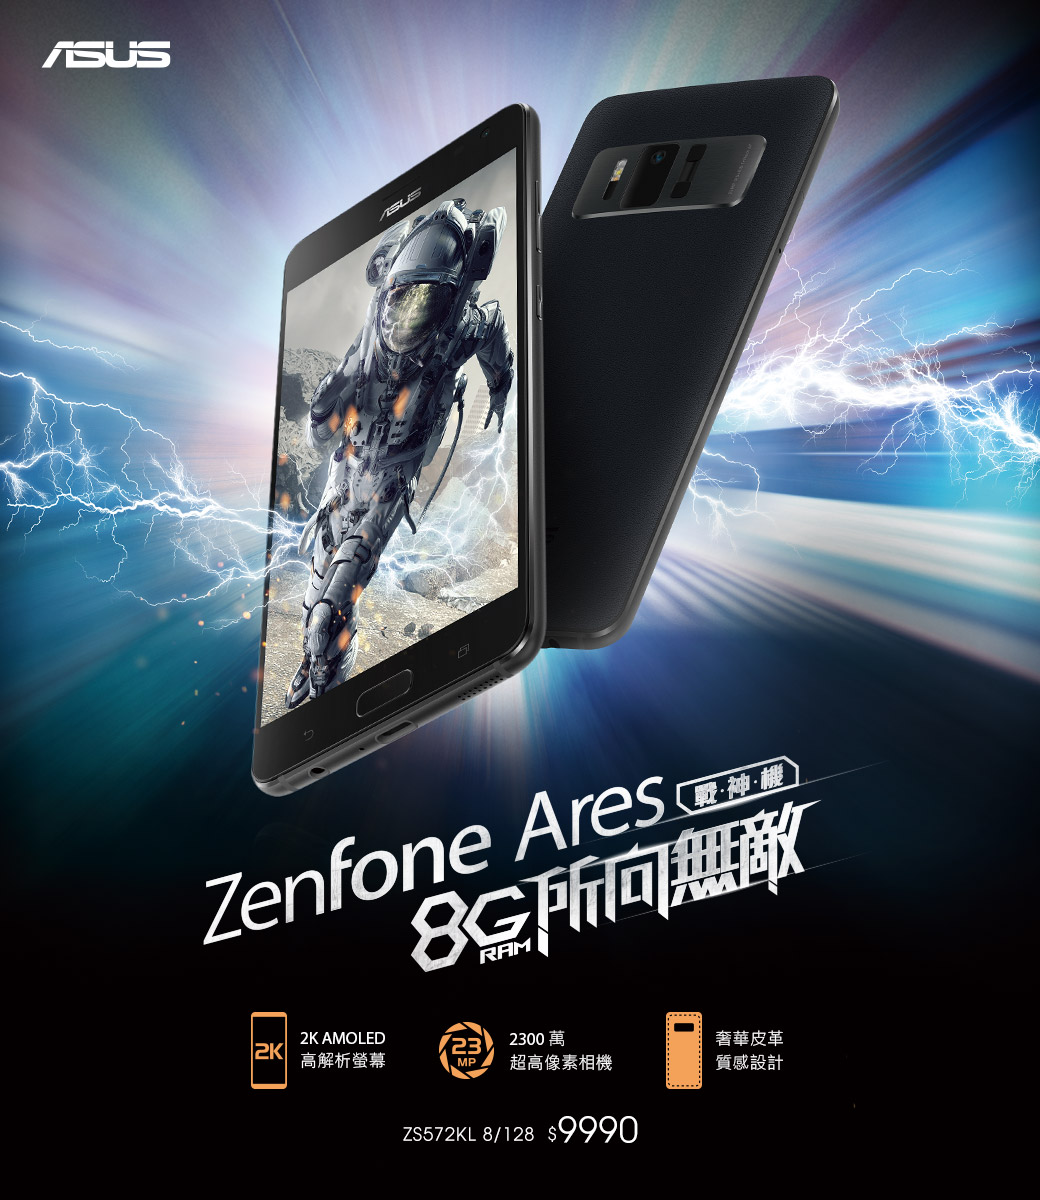 جوال أسوس ZenFone Ares يعلن رسمياً بمميزات رائعة وسعر رخيص جداً